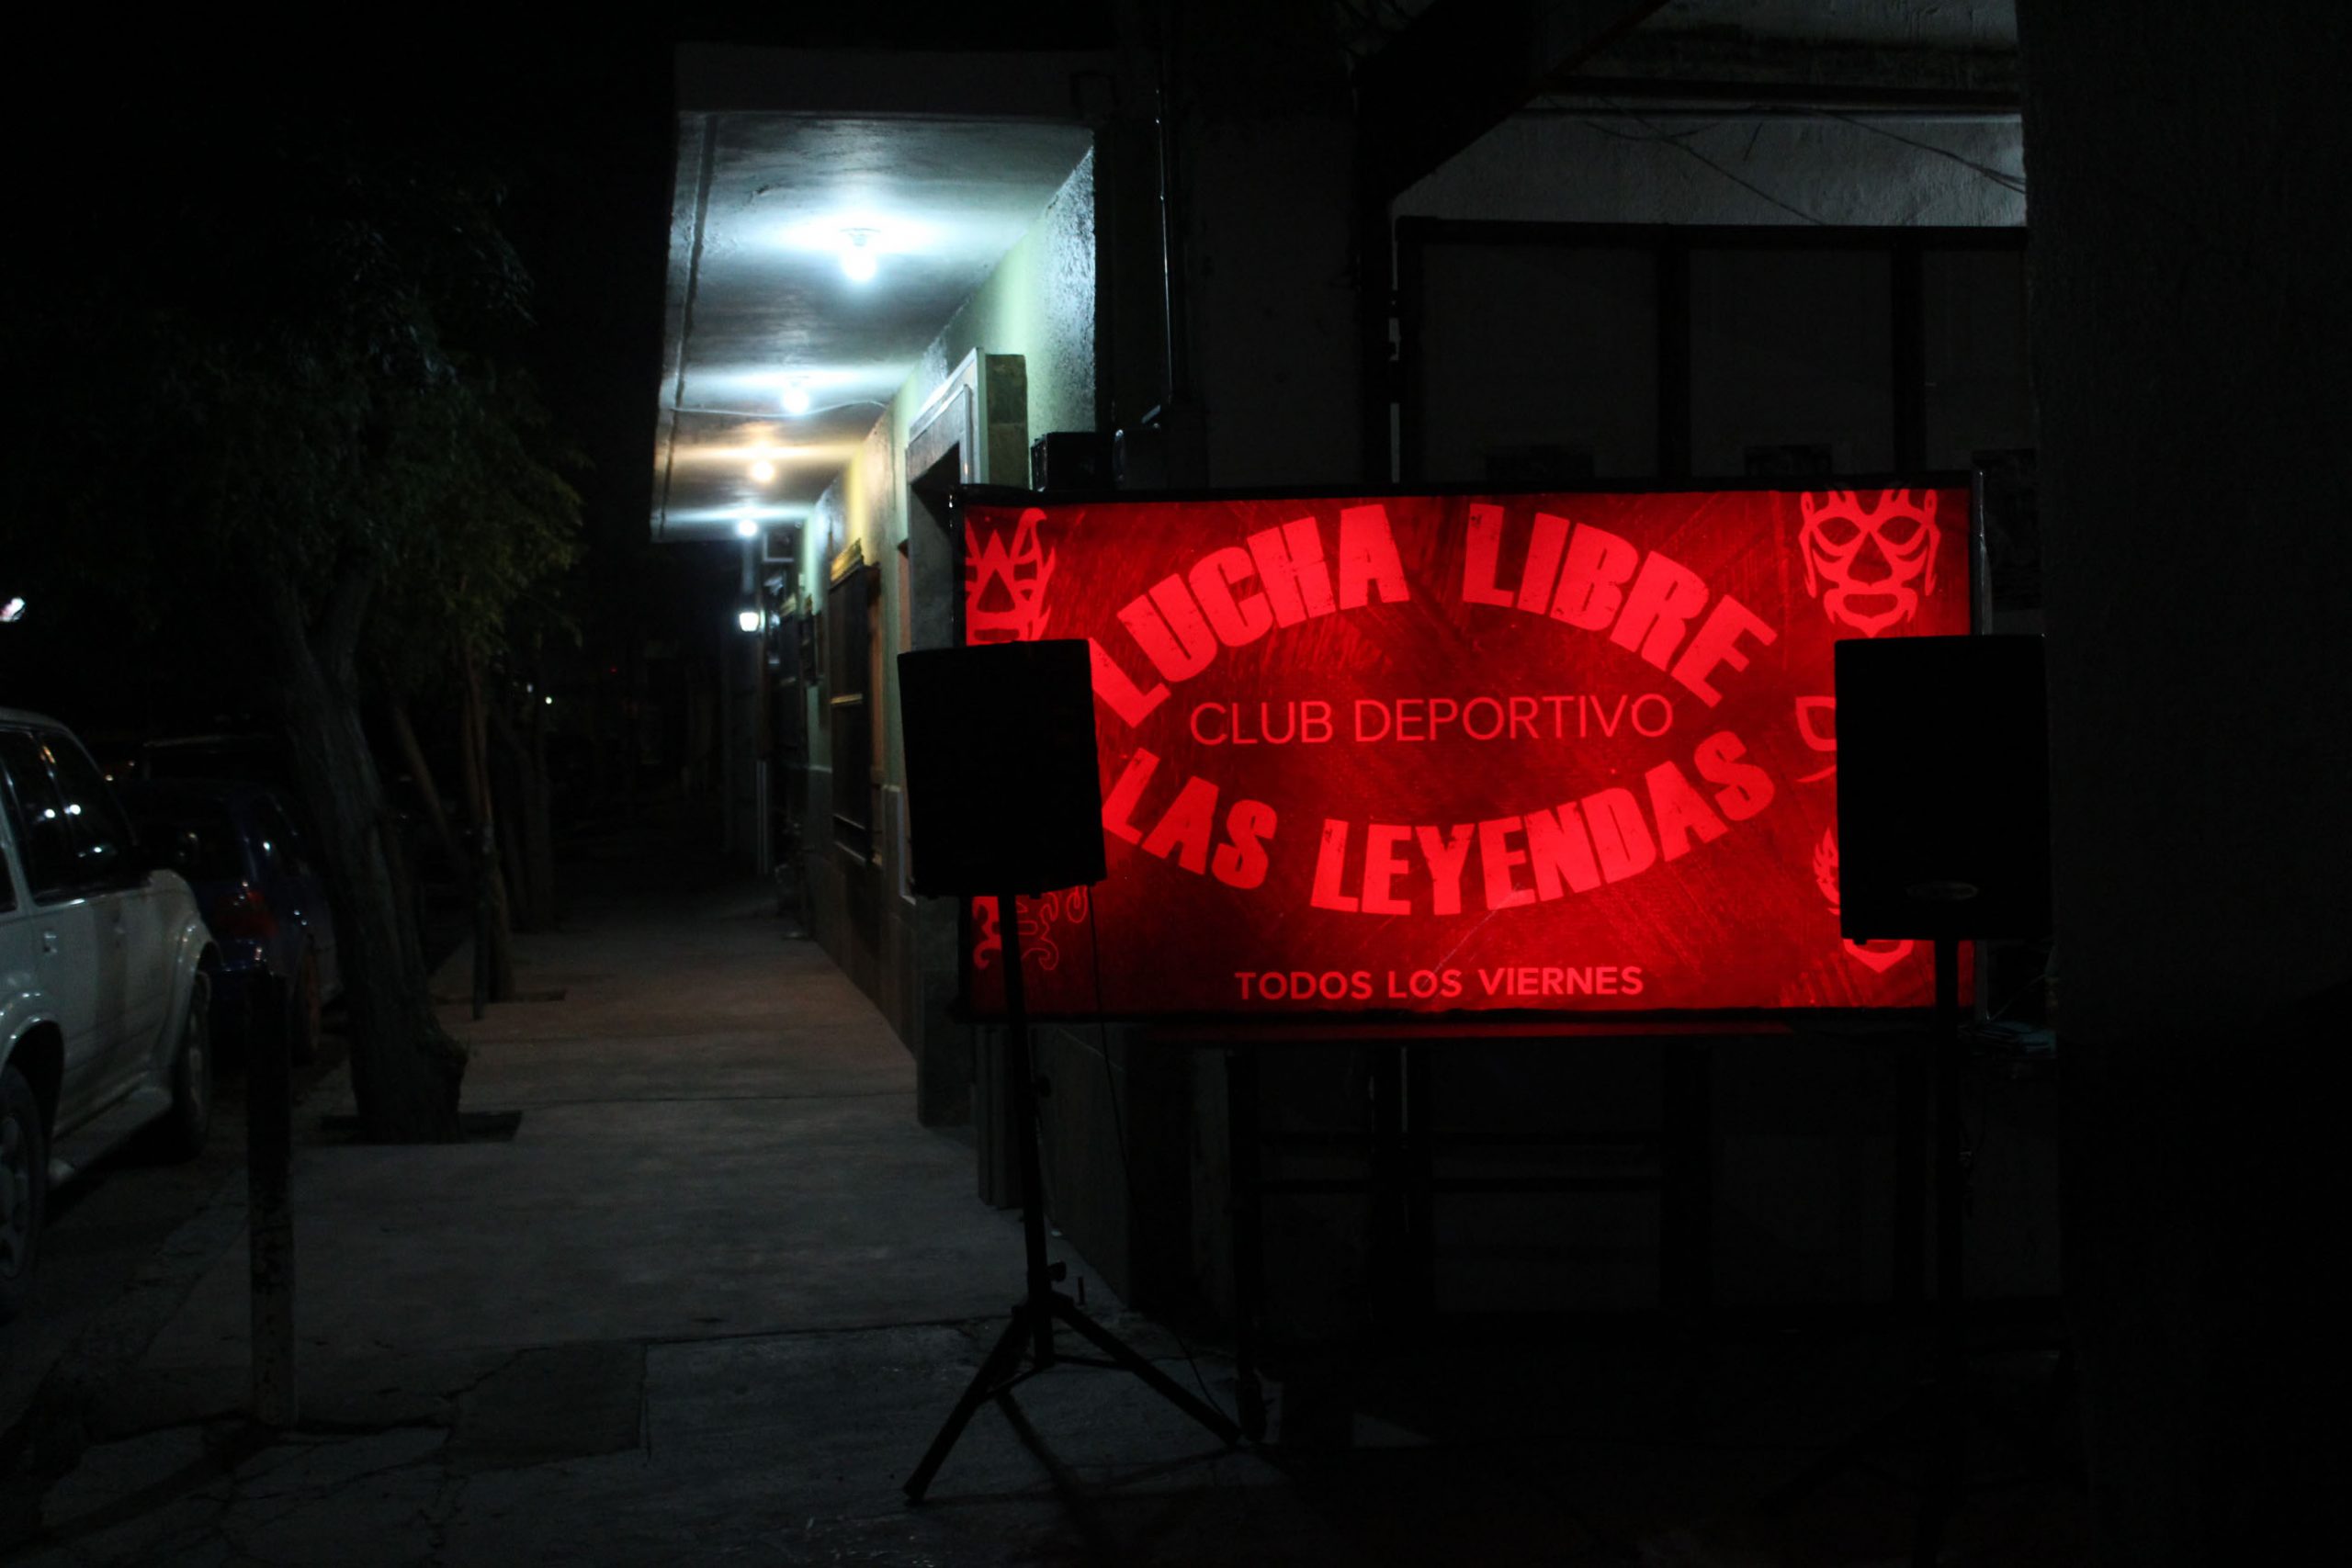 Arena Las Leyendas, inaugurada por Peluchín, quien fue entrenador de Lady Candy y Venus. Foto: Ciela Ávila